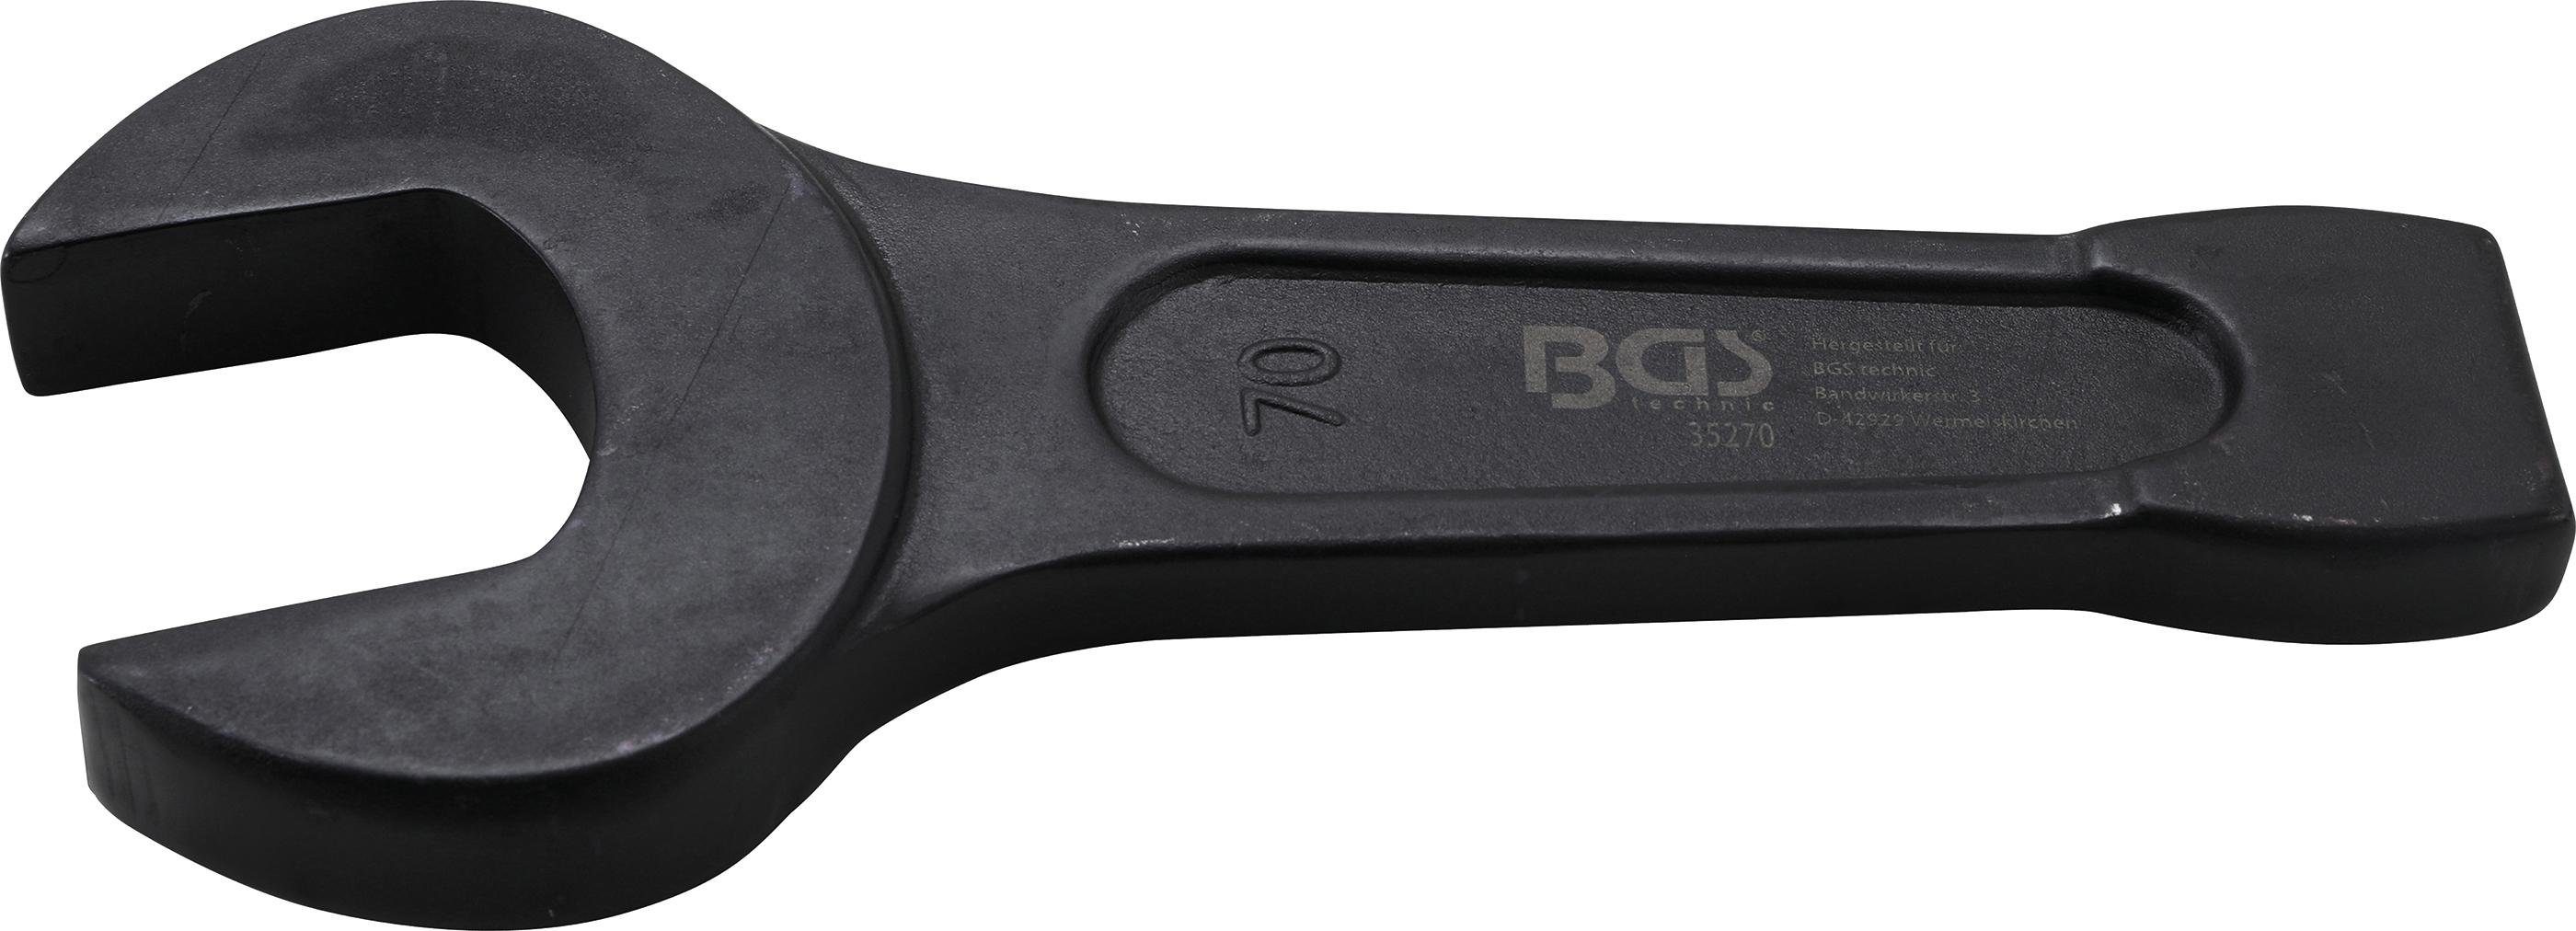 BGS technic Maulschlüssel Schlag-Maulschlüssel, SW 70 mm